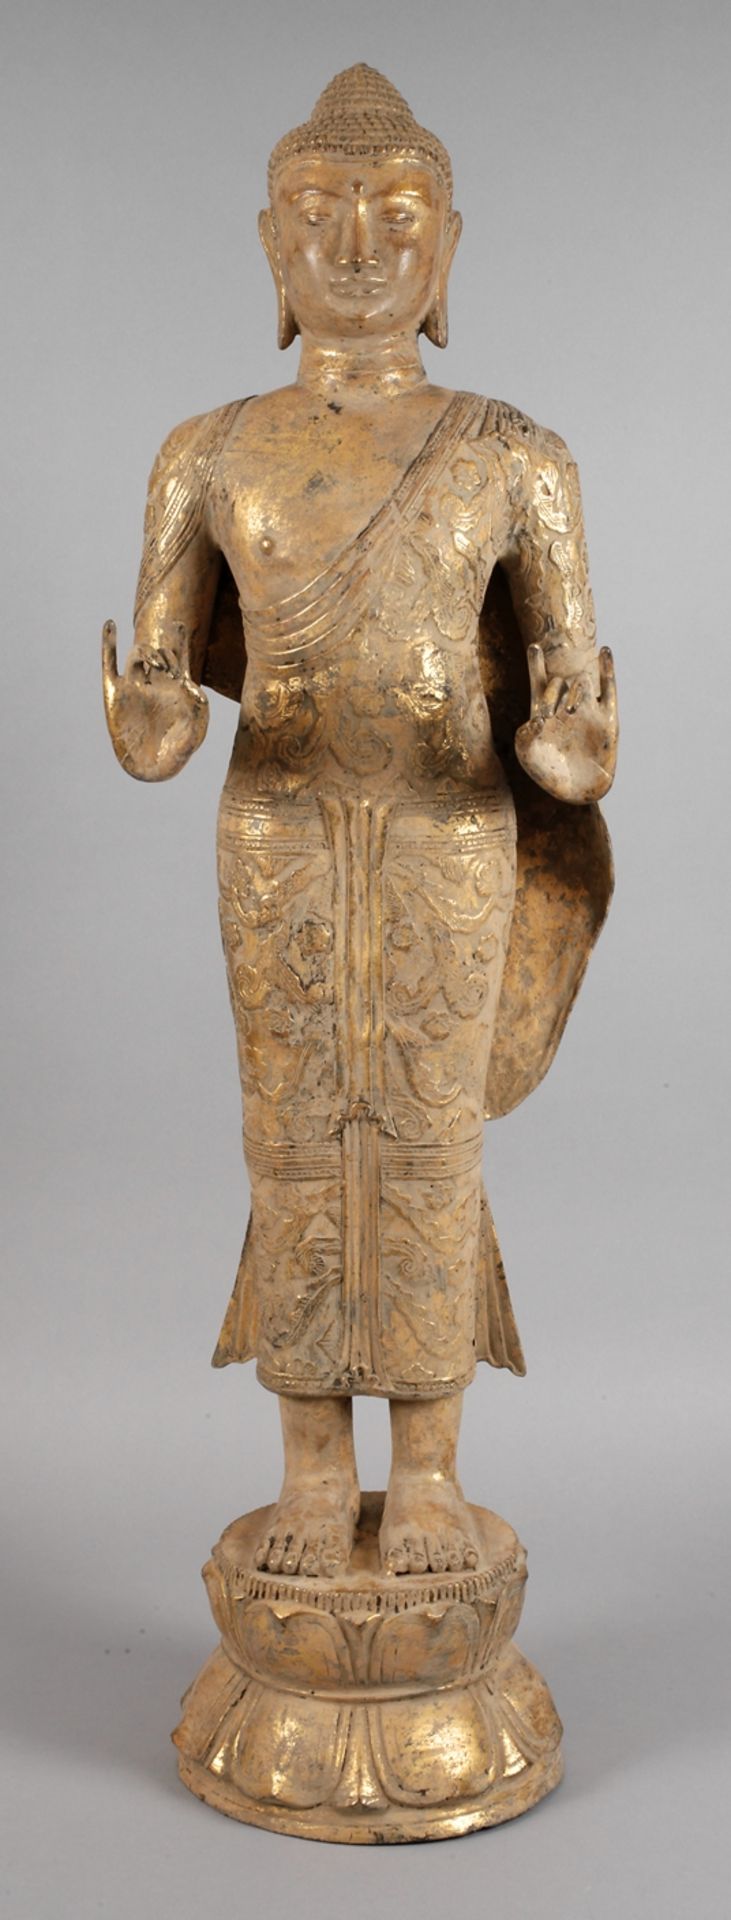 Großer stehender Buddha20. Jh., ungemarkt, Bronze dunkel patiniert und vergoldet, auf